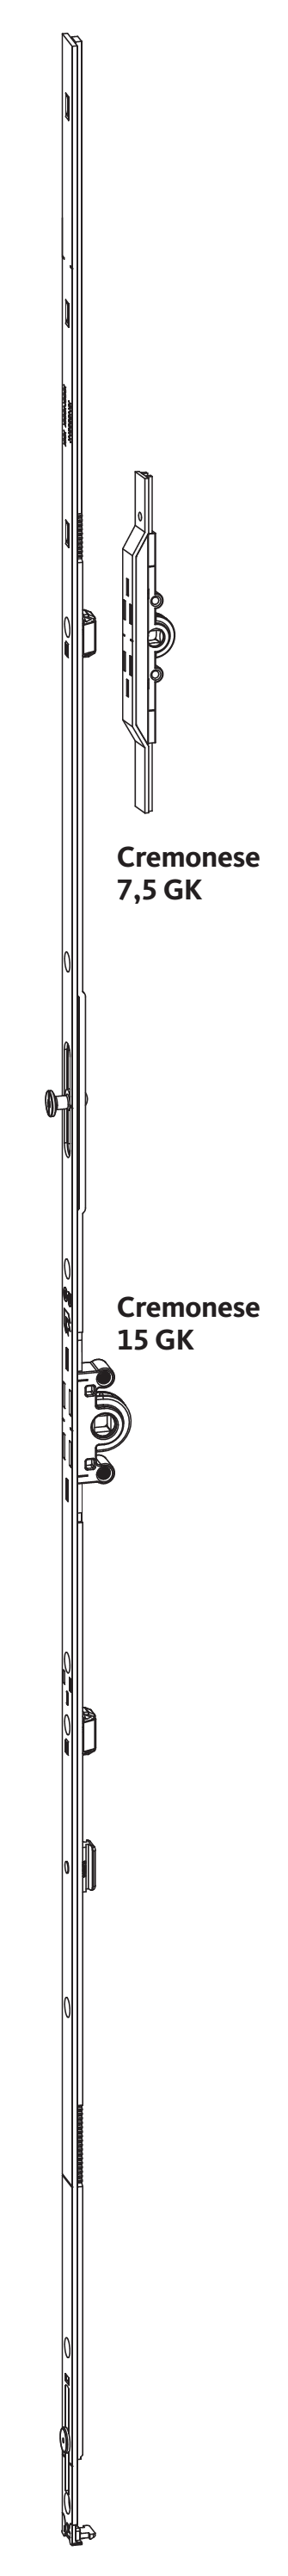 GU-ITALIA -  Cremonese UNI-JET anta ribalta altezza maniglia fissa con piedino senza dss per ribalta - gr / dim. 2190 - entrata 7,5 - alt. man. 980 - lbb/hbb 2101 - 2350